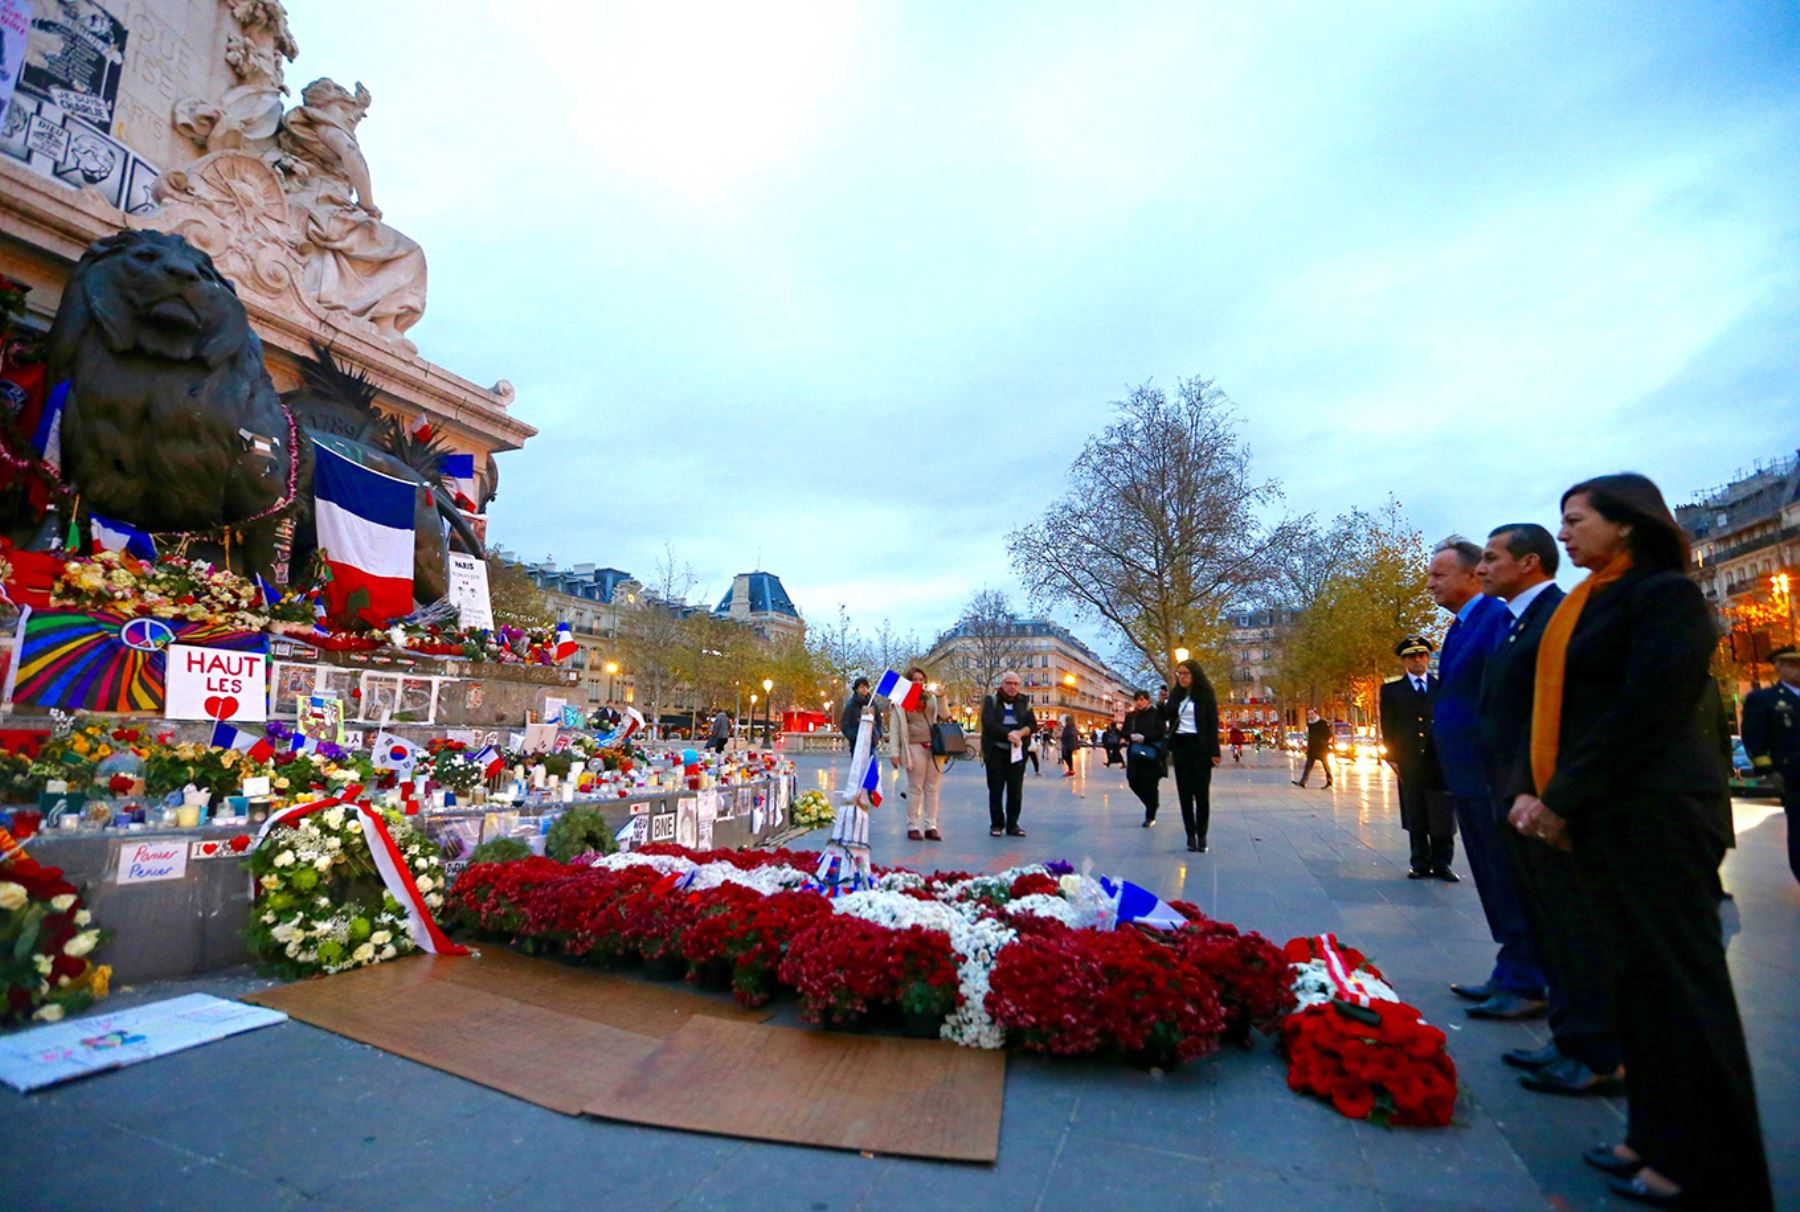 PARÍS, FRANCIA - DICIEMBRE 01. Homenaje en honor a víctimas de atentados terroristas perpetrados en París, rindió el presidente Ollanta Humala en la Plaza de la República de la capital francesa

Foto: PRESIDENCIA.